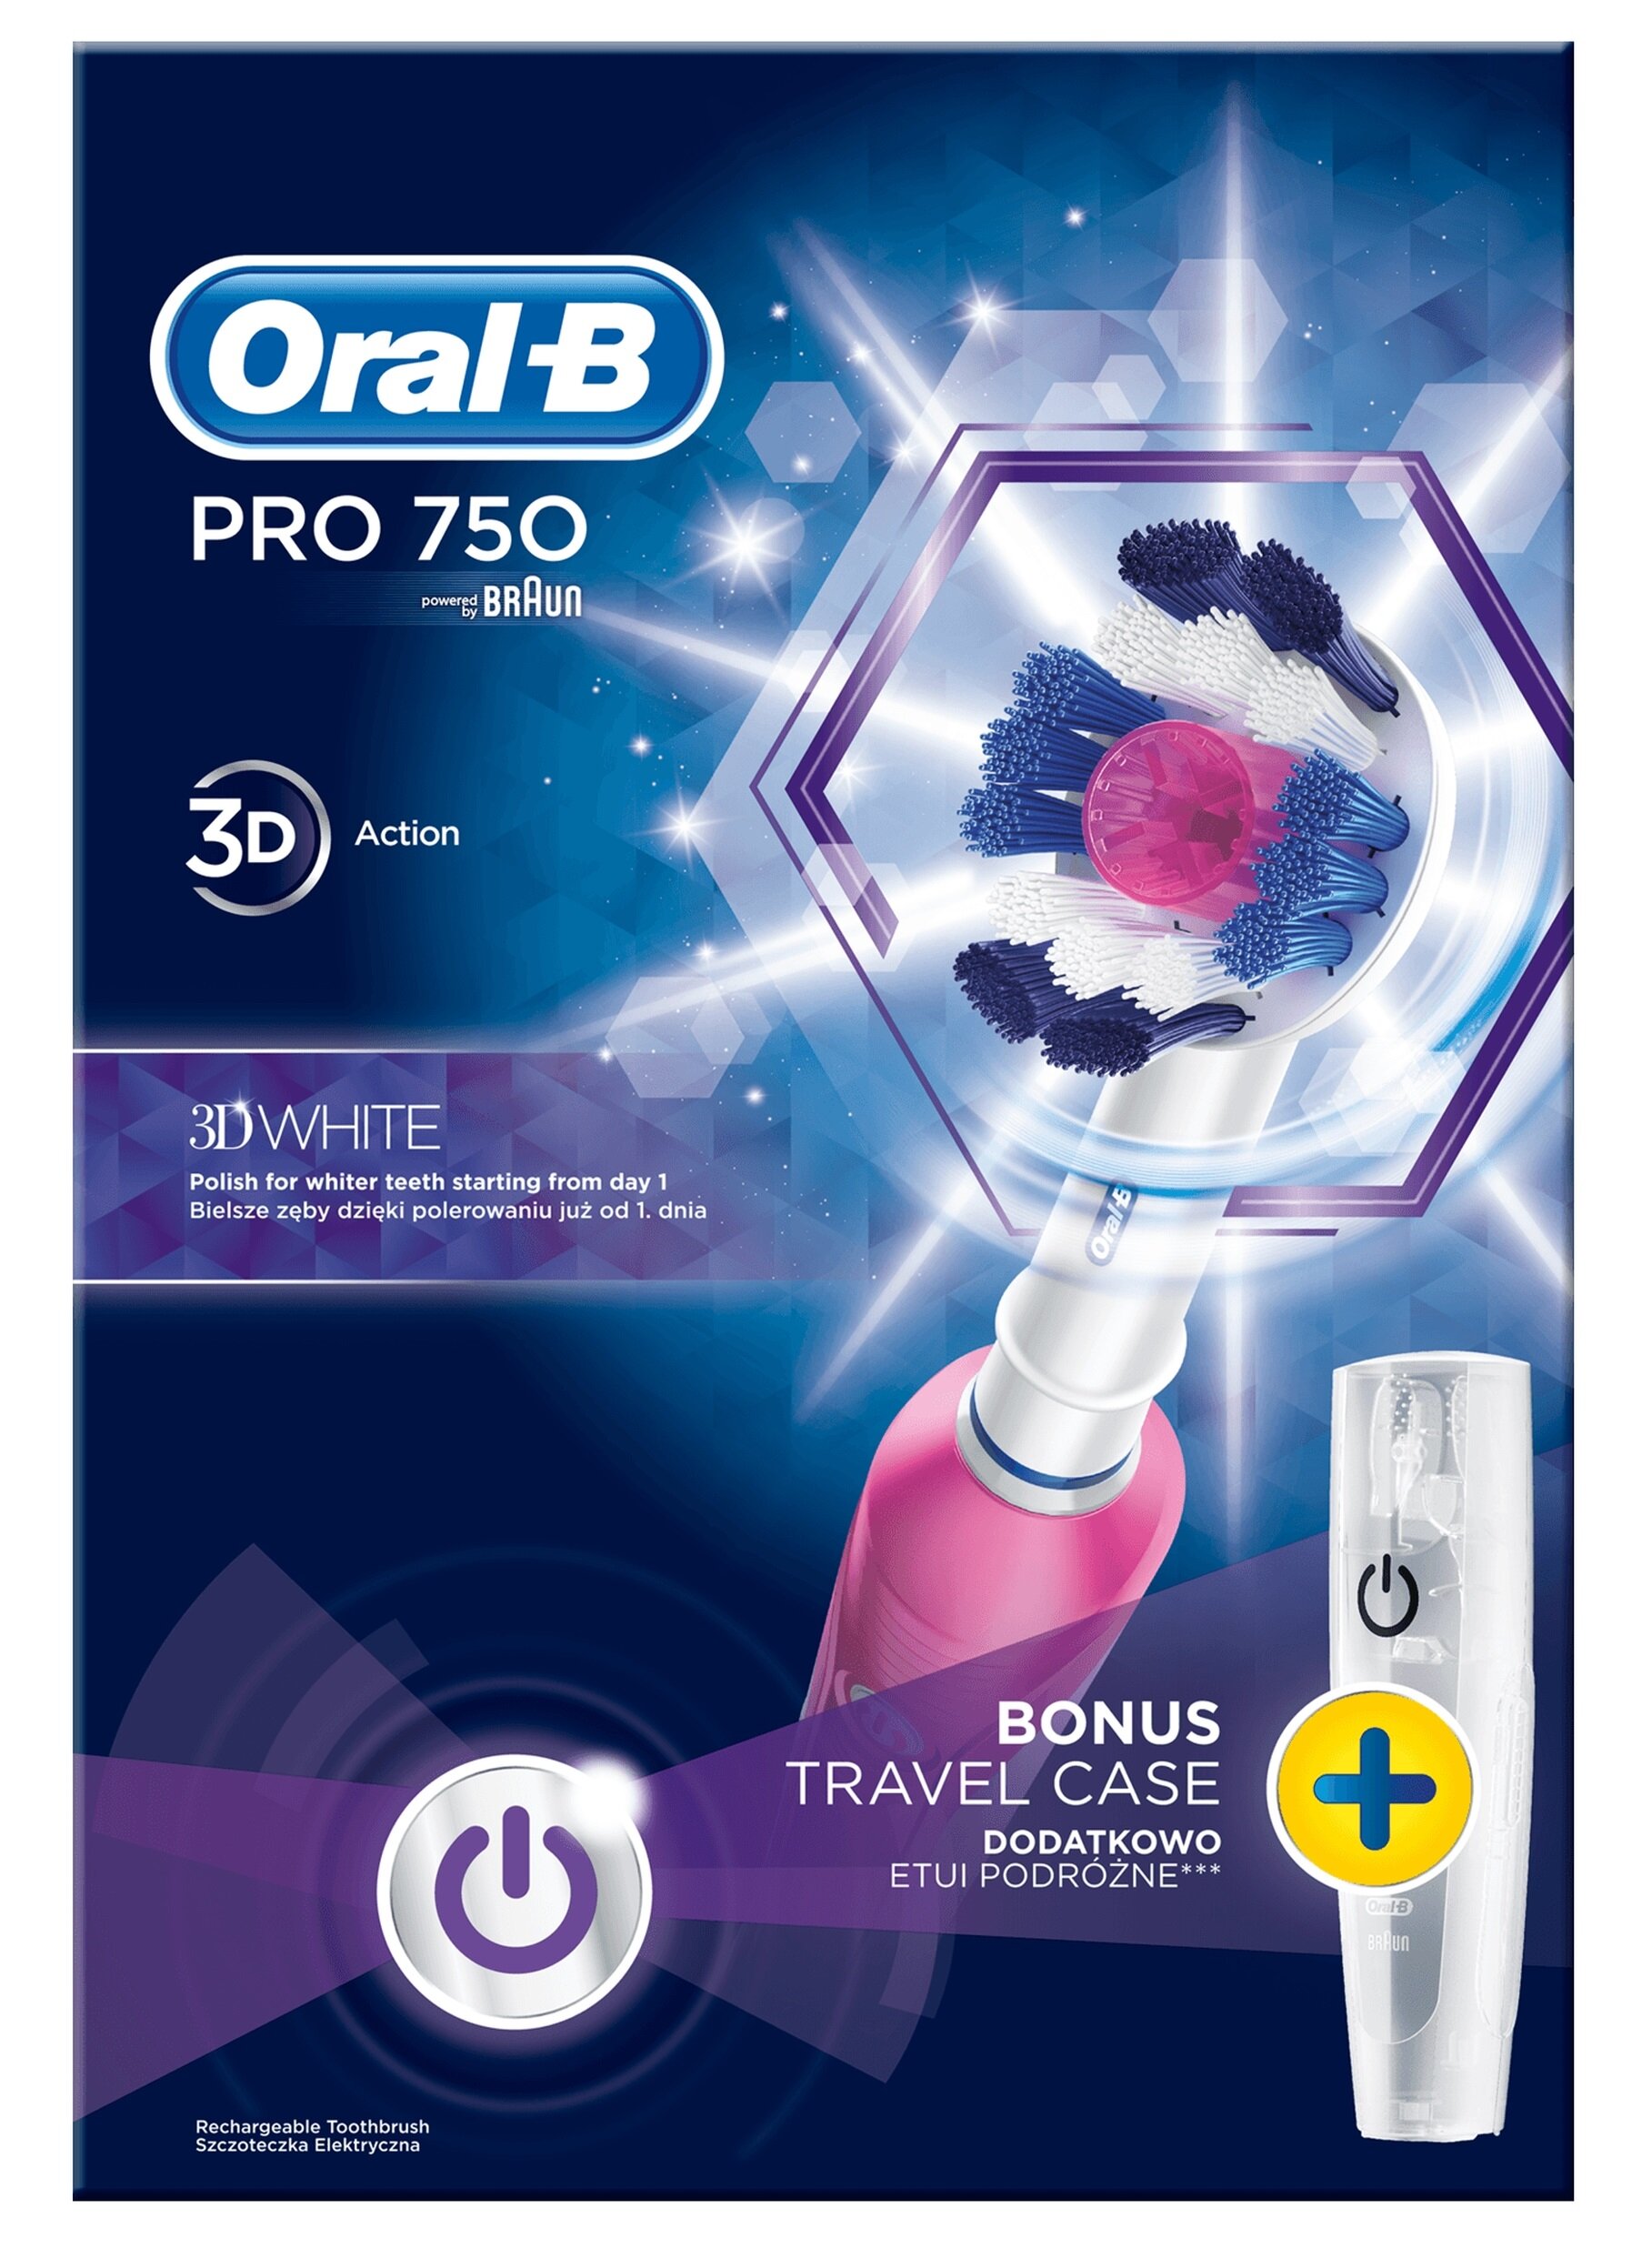 Oral-B Pro 750 Szczoteczka rotacyjna - niskie ceny i opinie w Media Expert